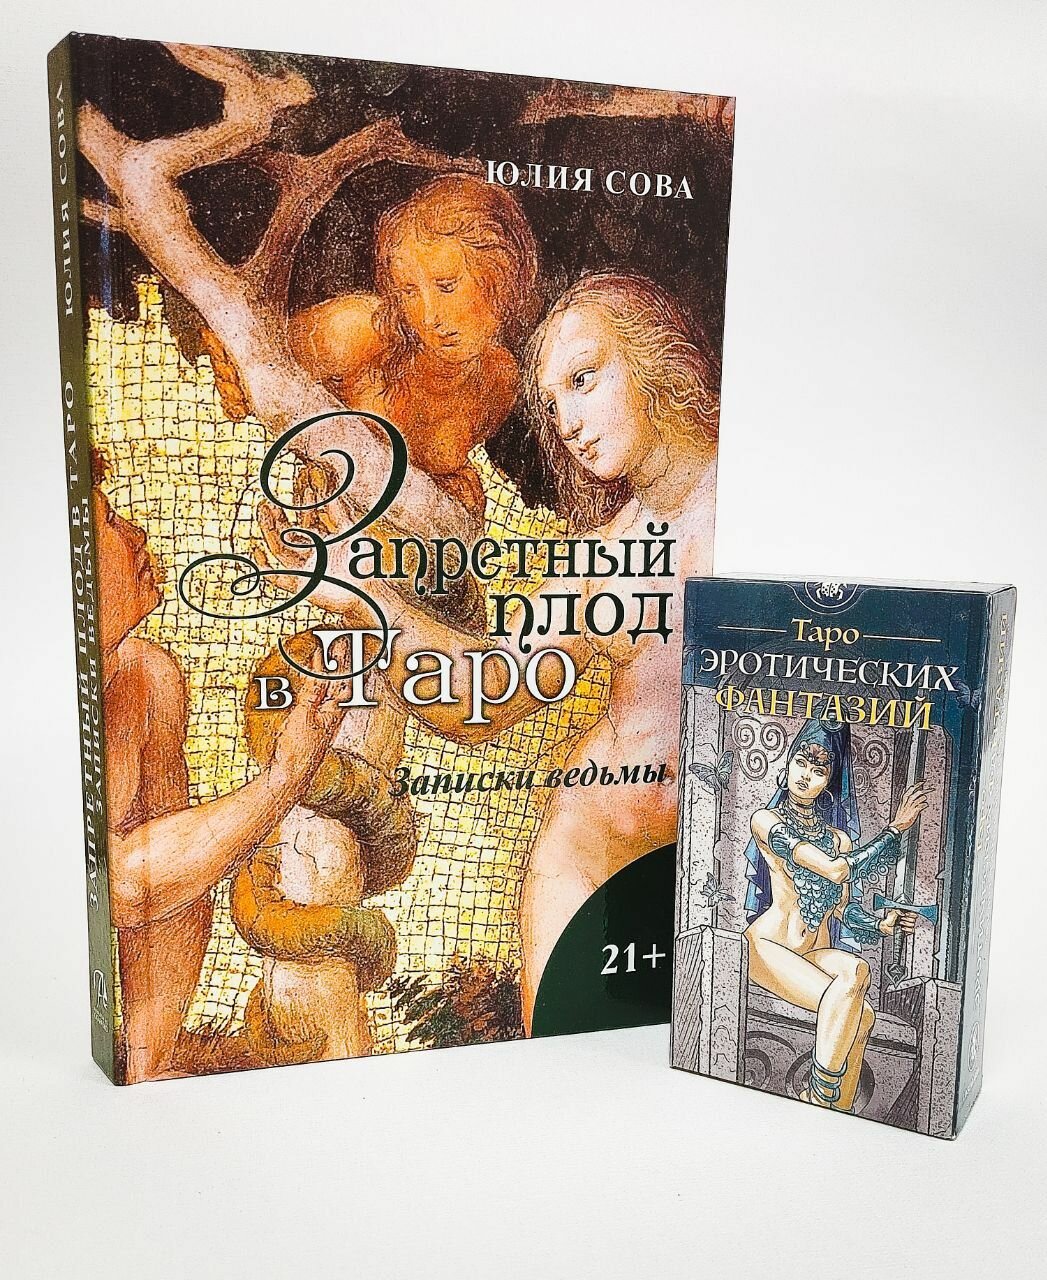 Комплект из колоды и книги Карты таро эротических фантазий + Книга Запретный плод в Таро / Аввалон-Ло Скарабео